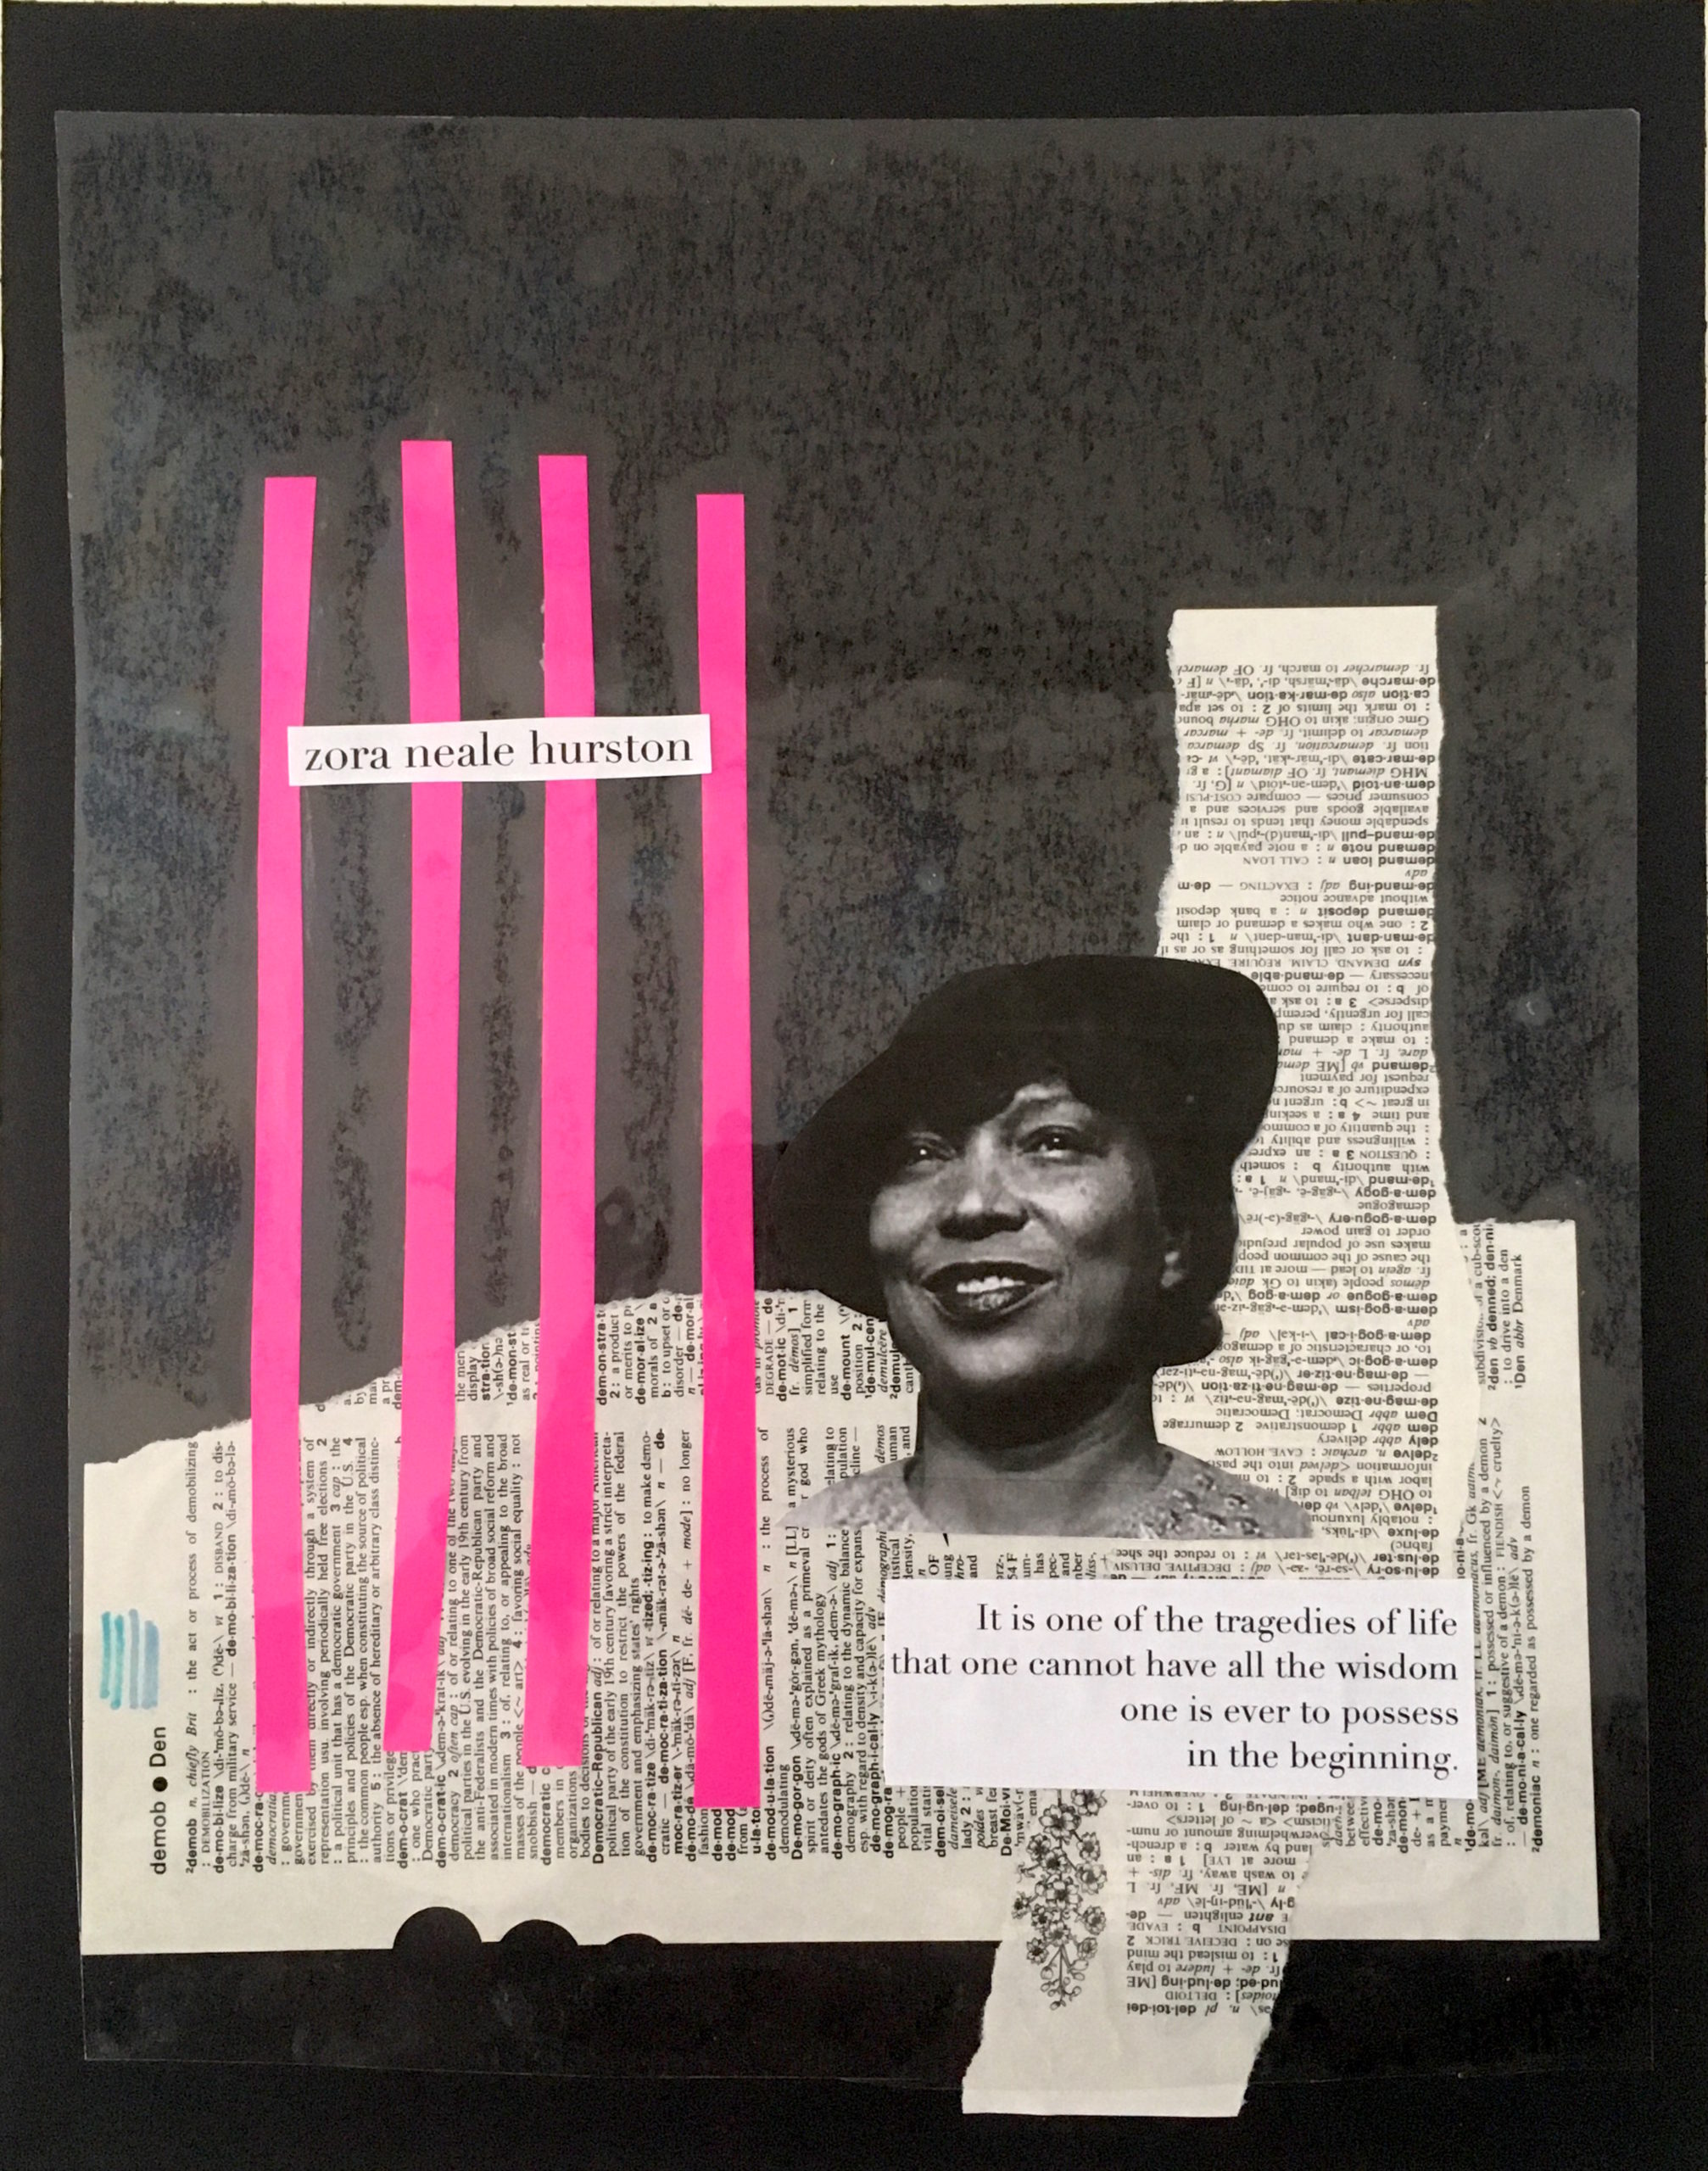 ejemplo de retrato en collage que muestra el retrato de Zora Neale Hurston sobre una página de diccionario en collage